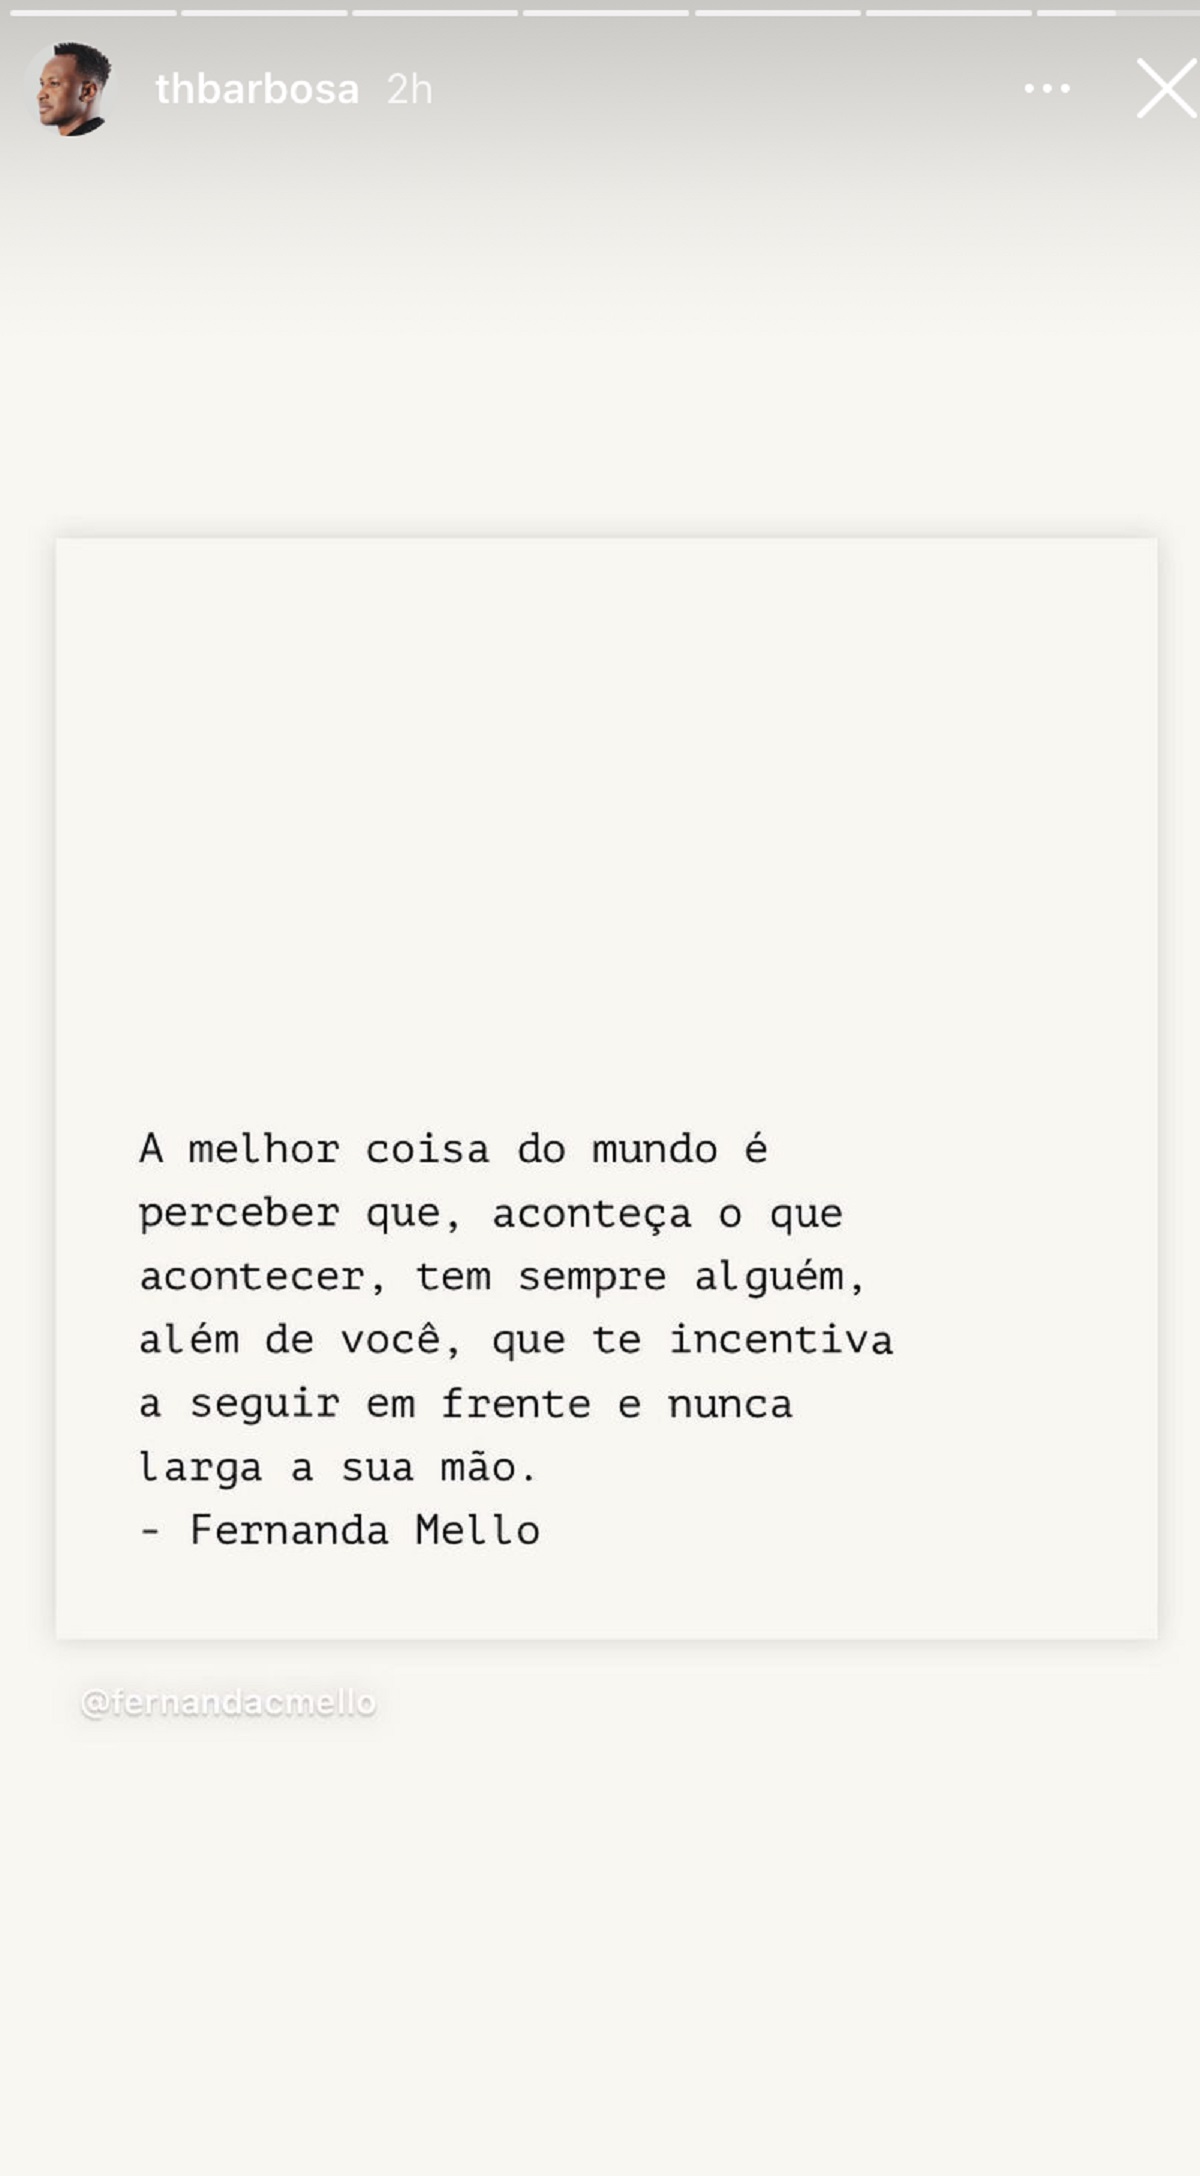 Thiaguinho posta mensagem enigmática em seu stories do Instagram (Foto: Reprodução/Instagram)